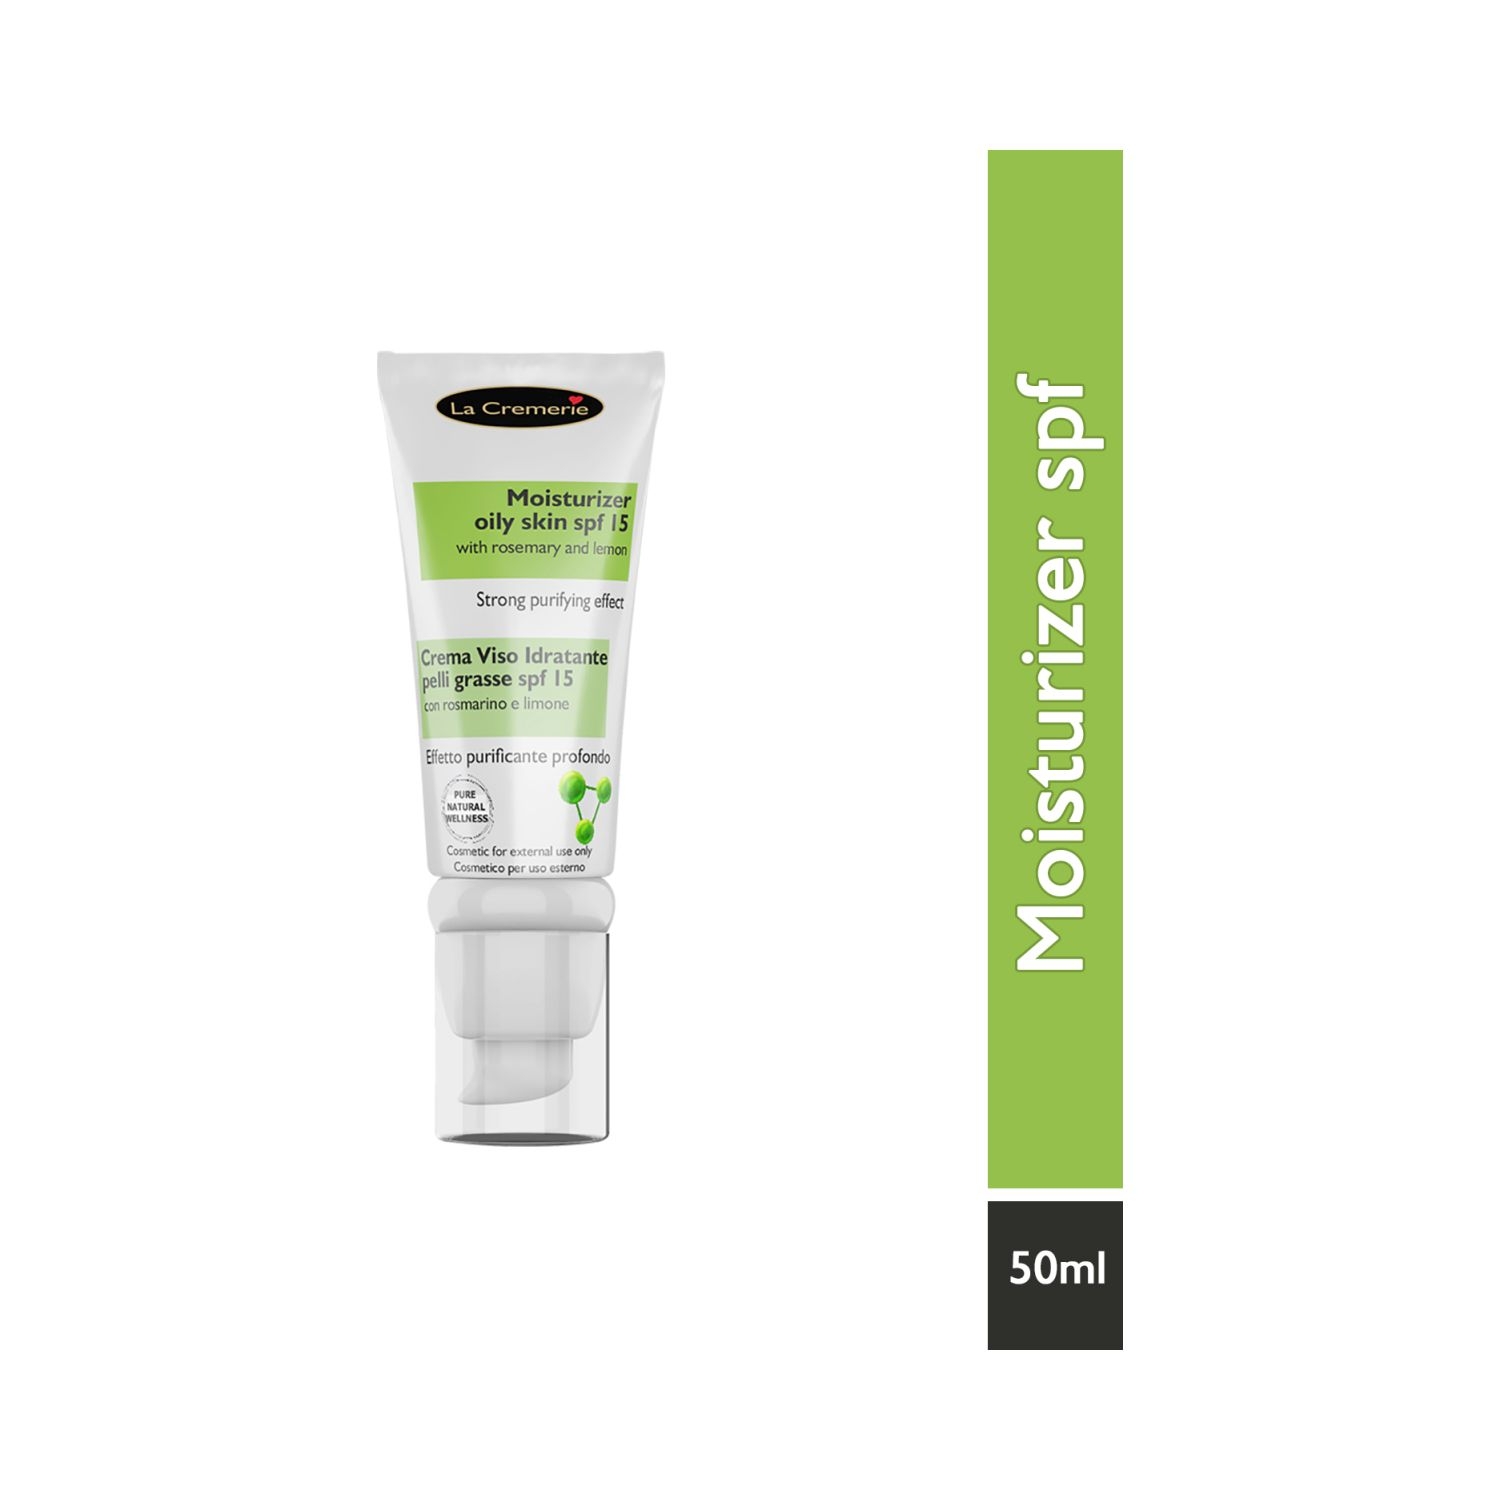 La Cremerie | La Cremerie Moisturiser Oily Skin Face Cream SPF 15 (50ml)